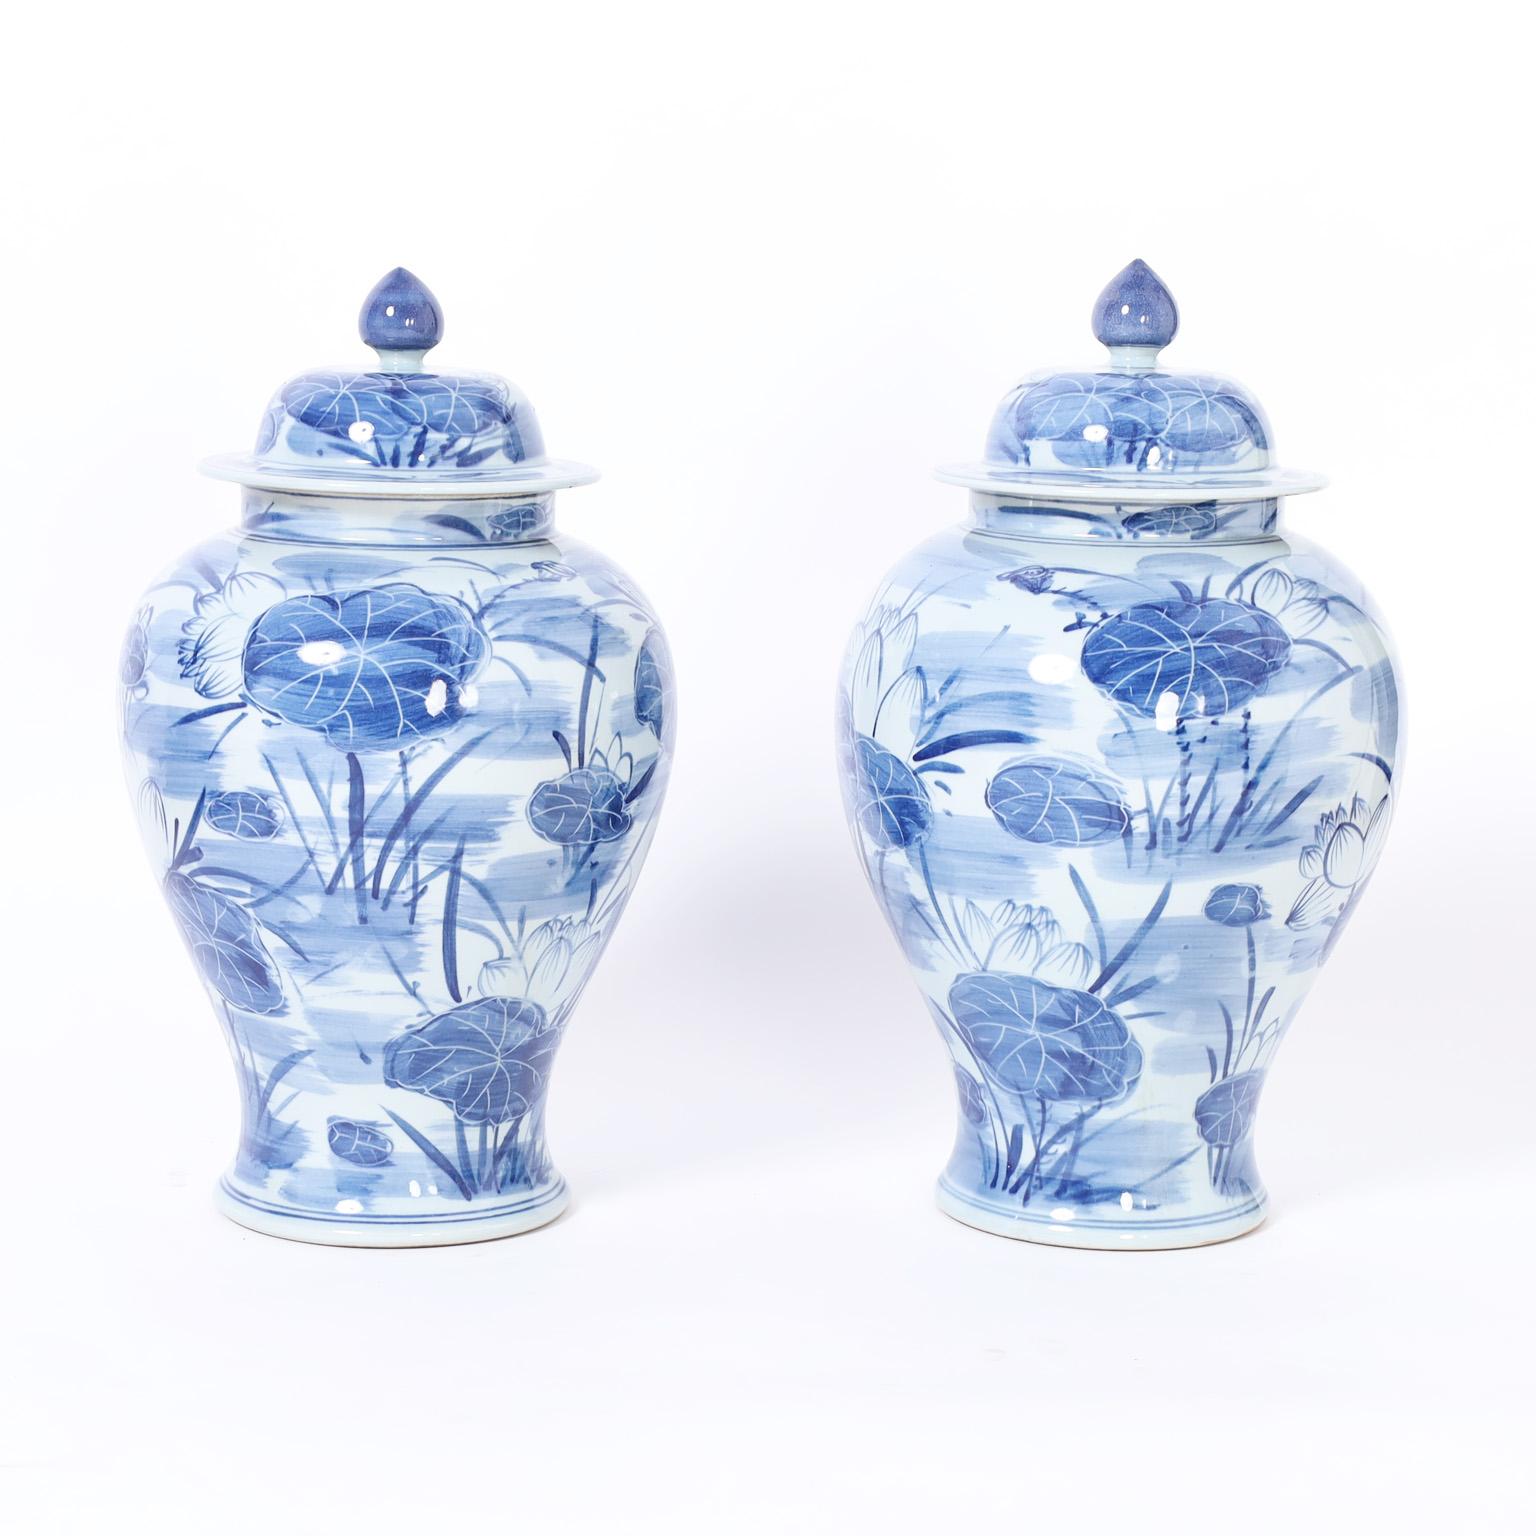 Charmantes Paar chinesischer blau-weißer Urnen aus Porzellan in klassischer Form mit abnehmbarem Deckel und von Hand mit Lilien und Blumen verziert.